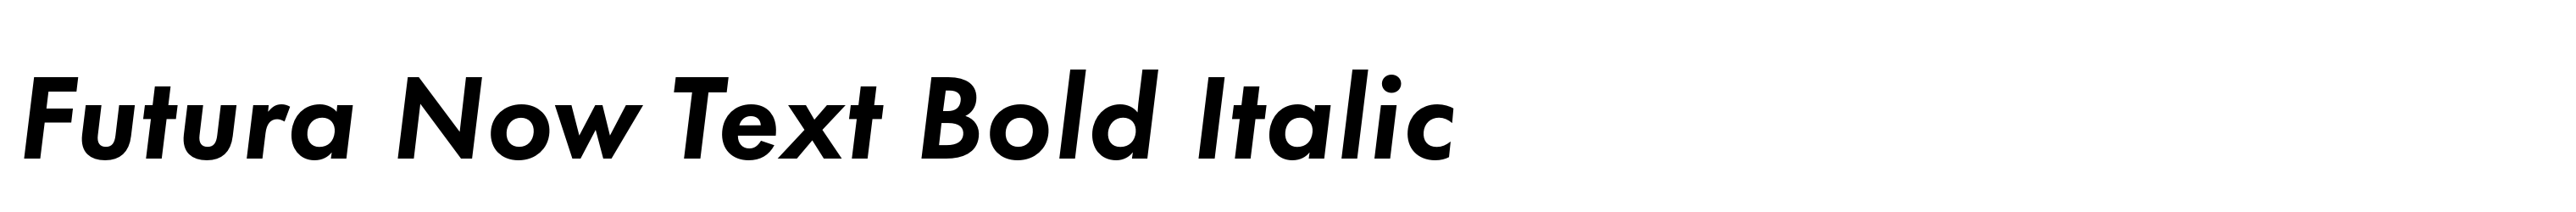 Futura Now Text Bold Italic